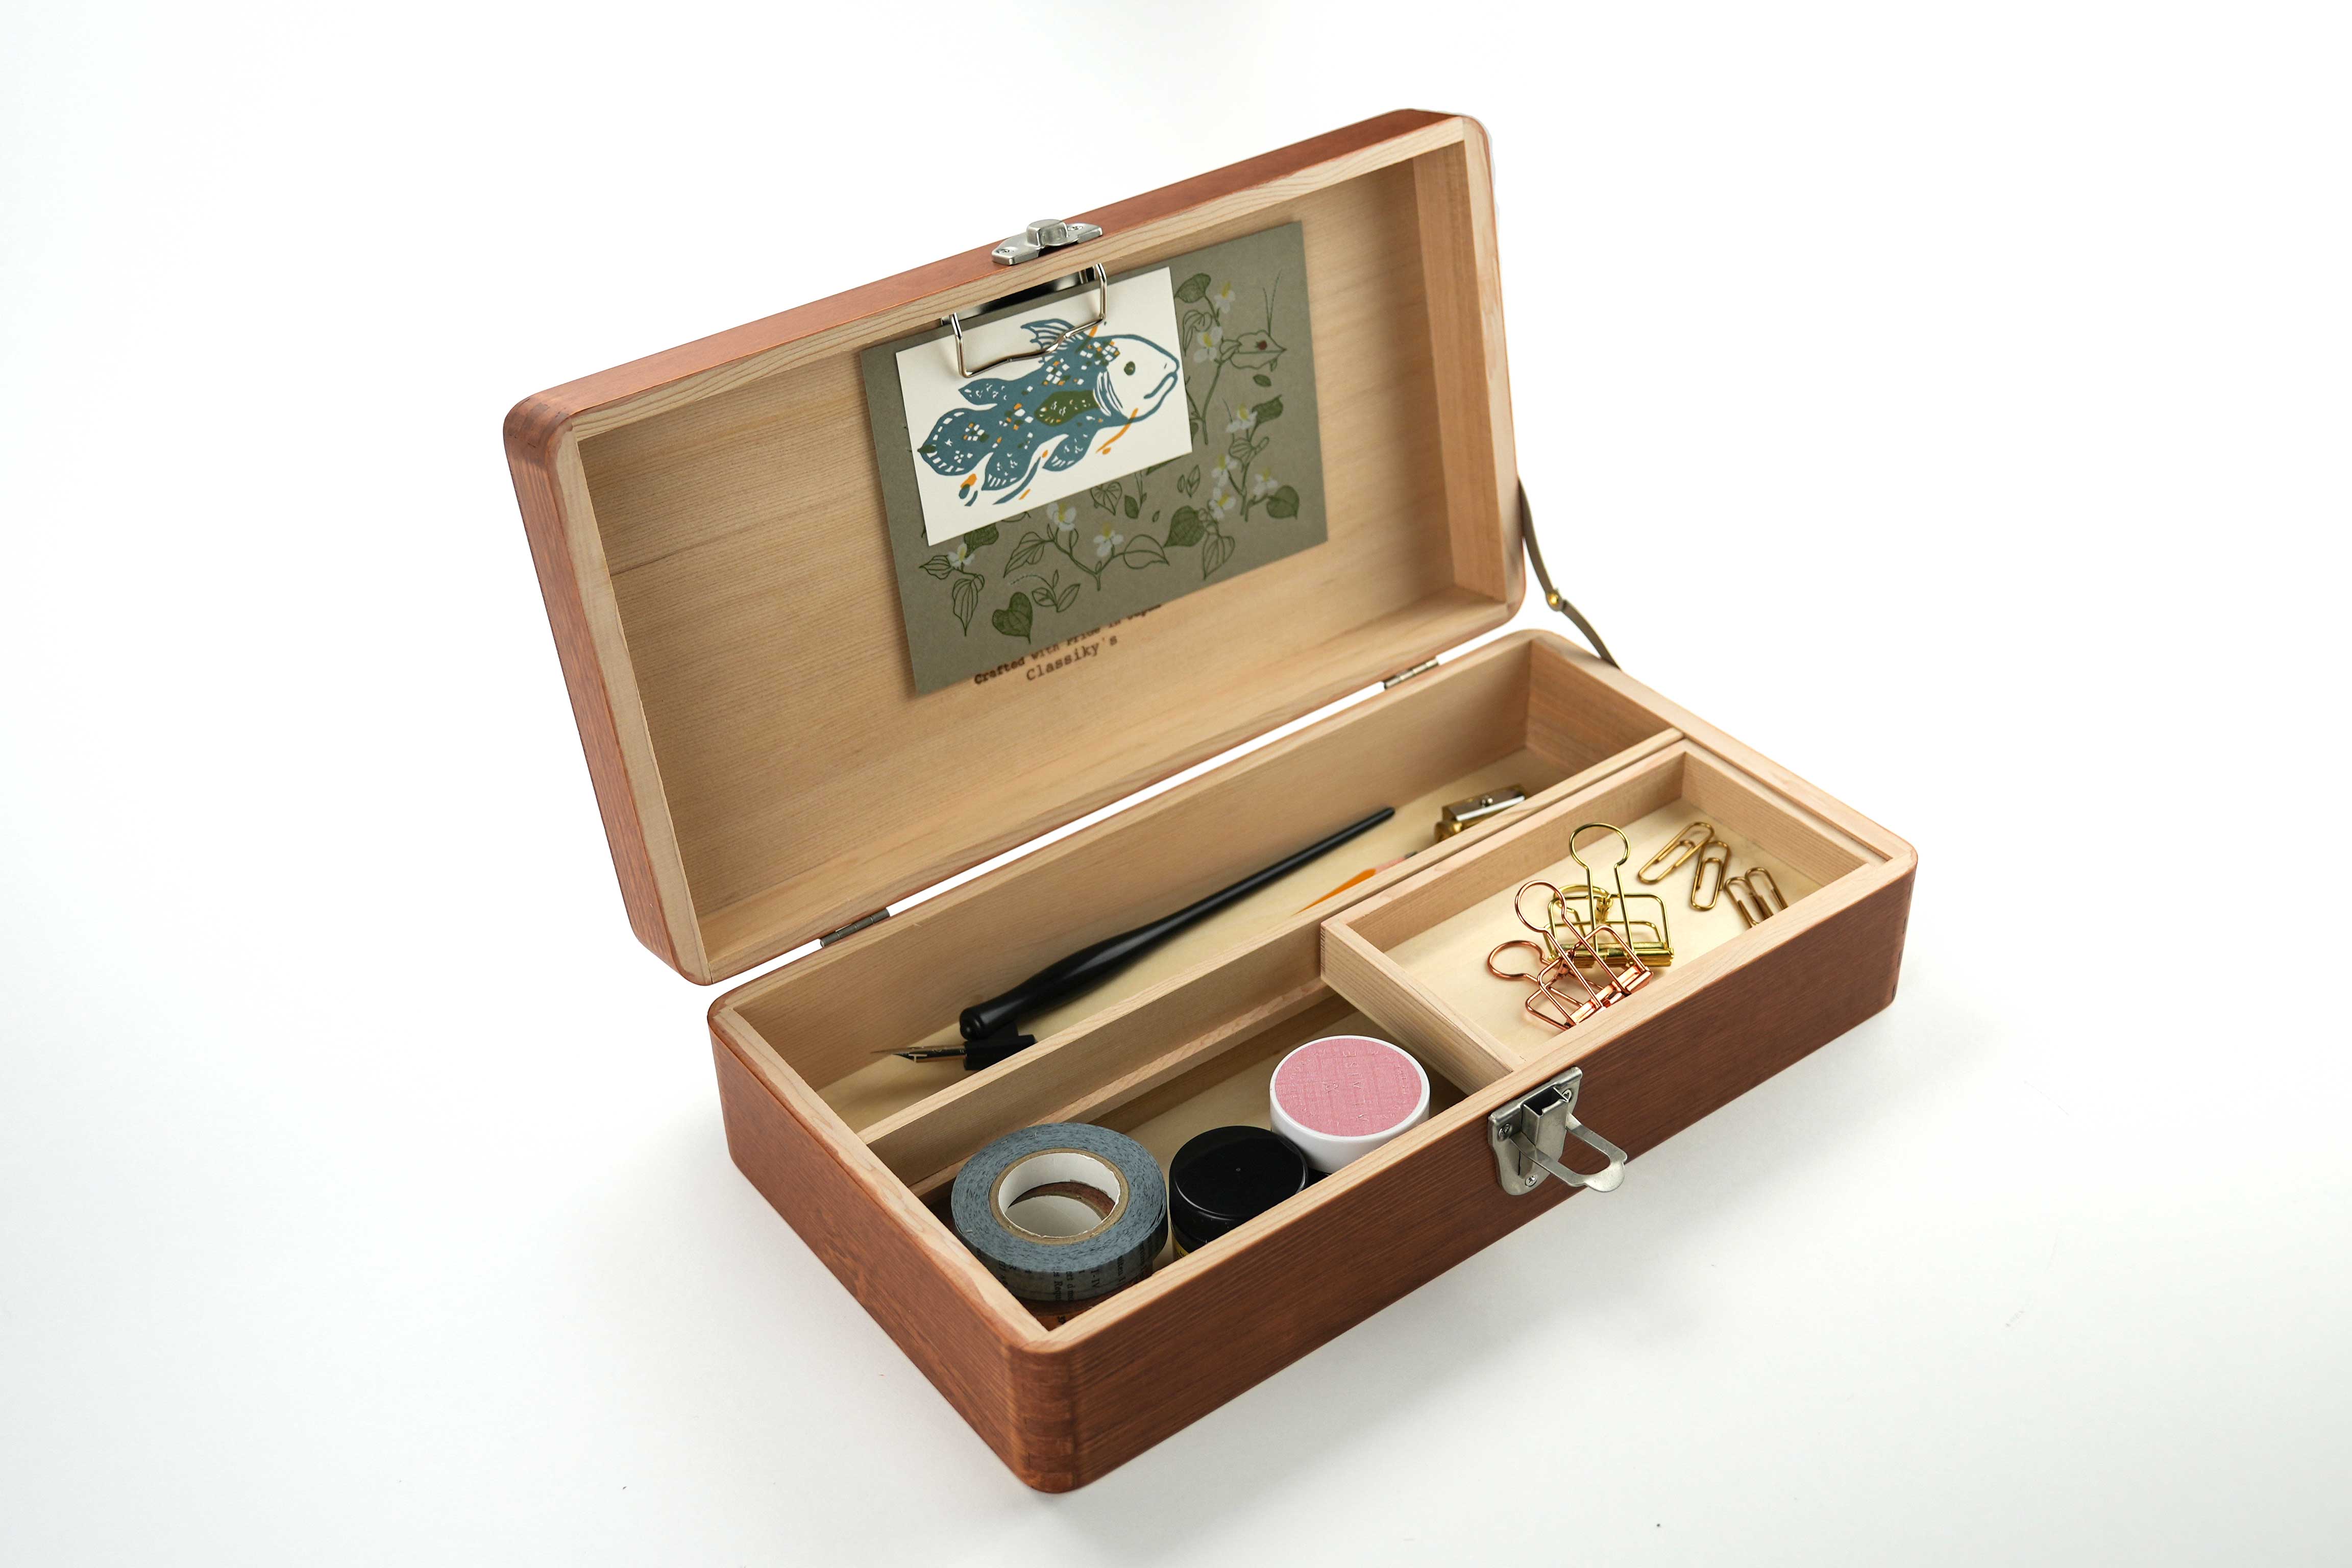 Toga Wood Desk Tool Box